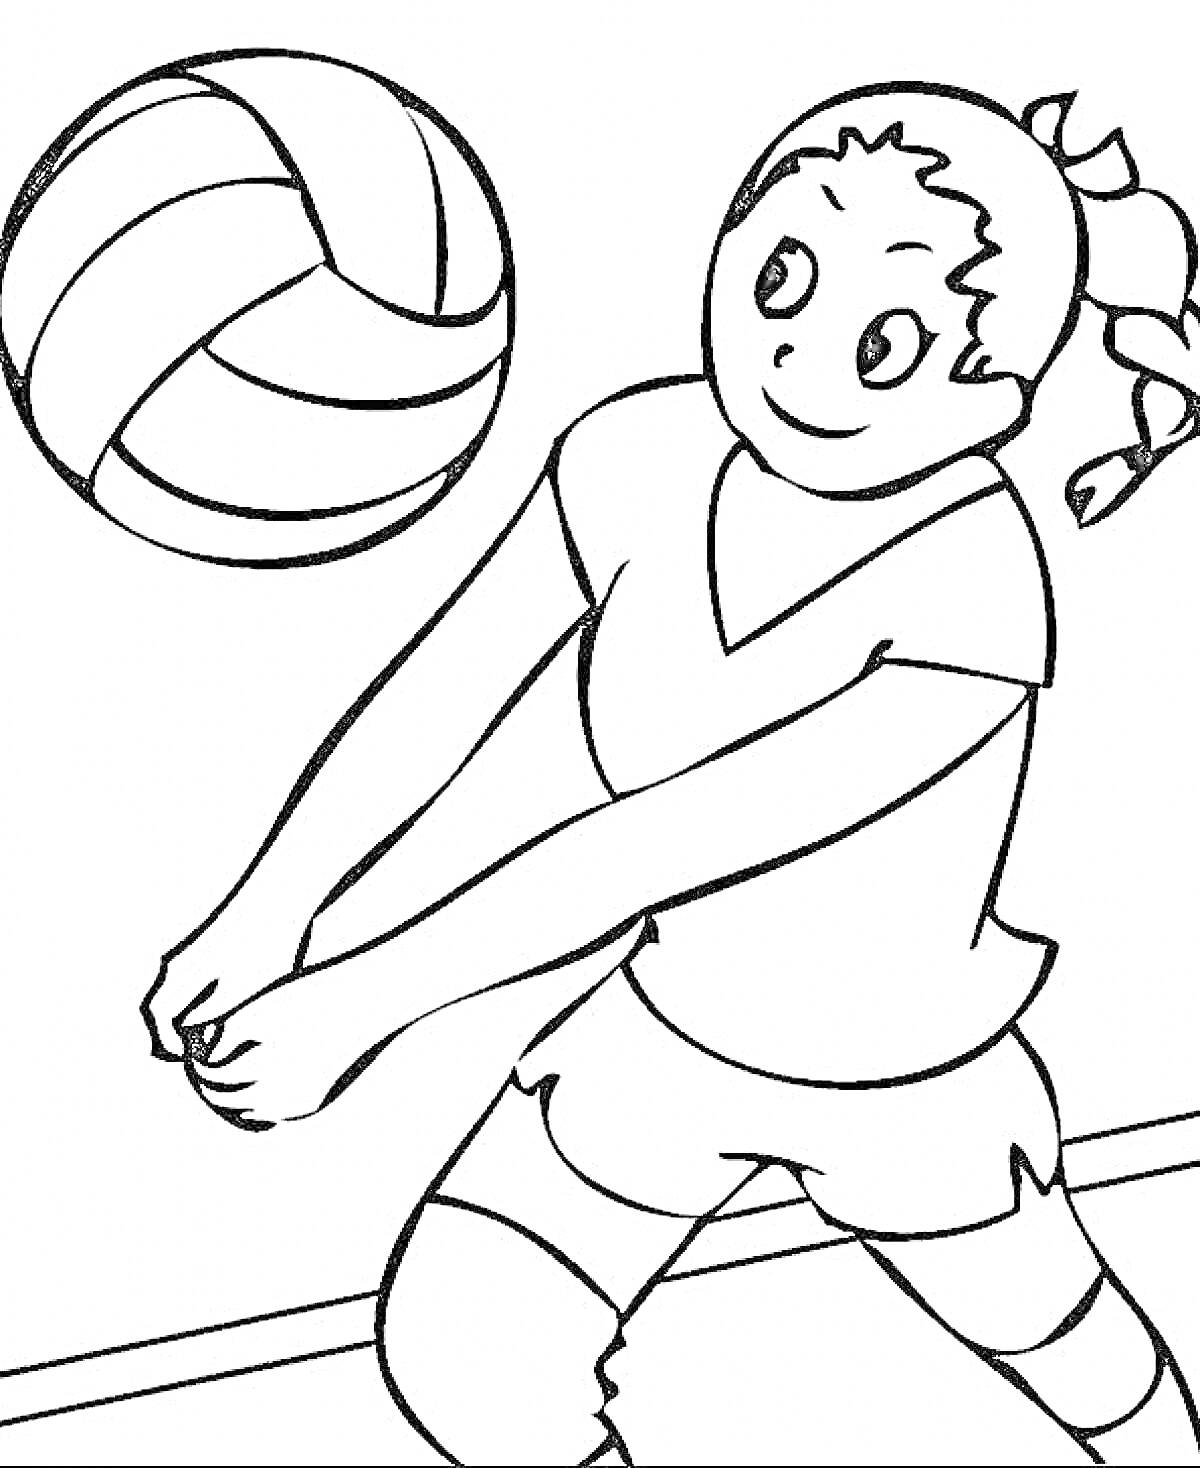 Девочка играет в волейбол